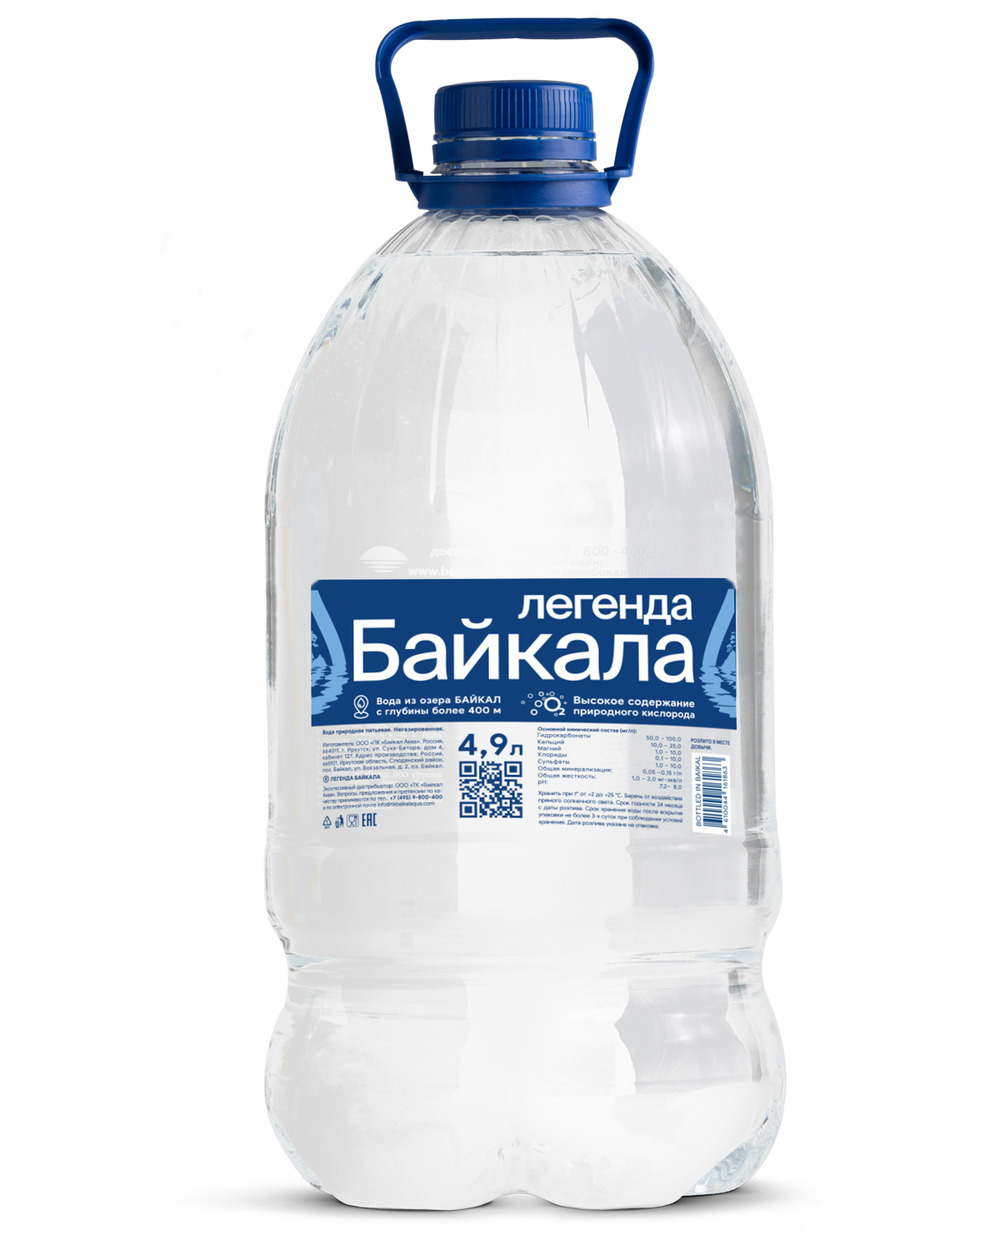 Вода российского производства. Питьевая вода. Легенда Байкала вода. Байкал вода питьевая. Минеральная вода Байкал.